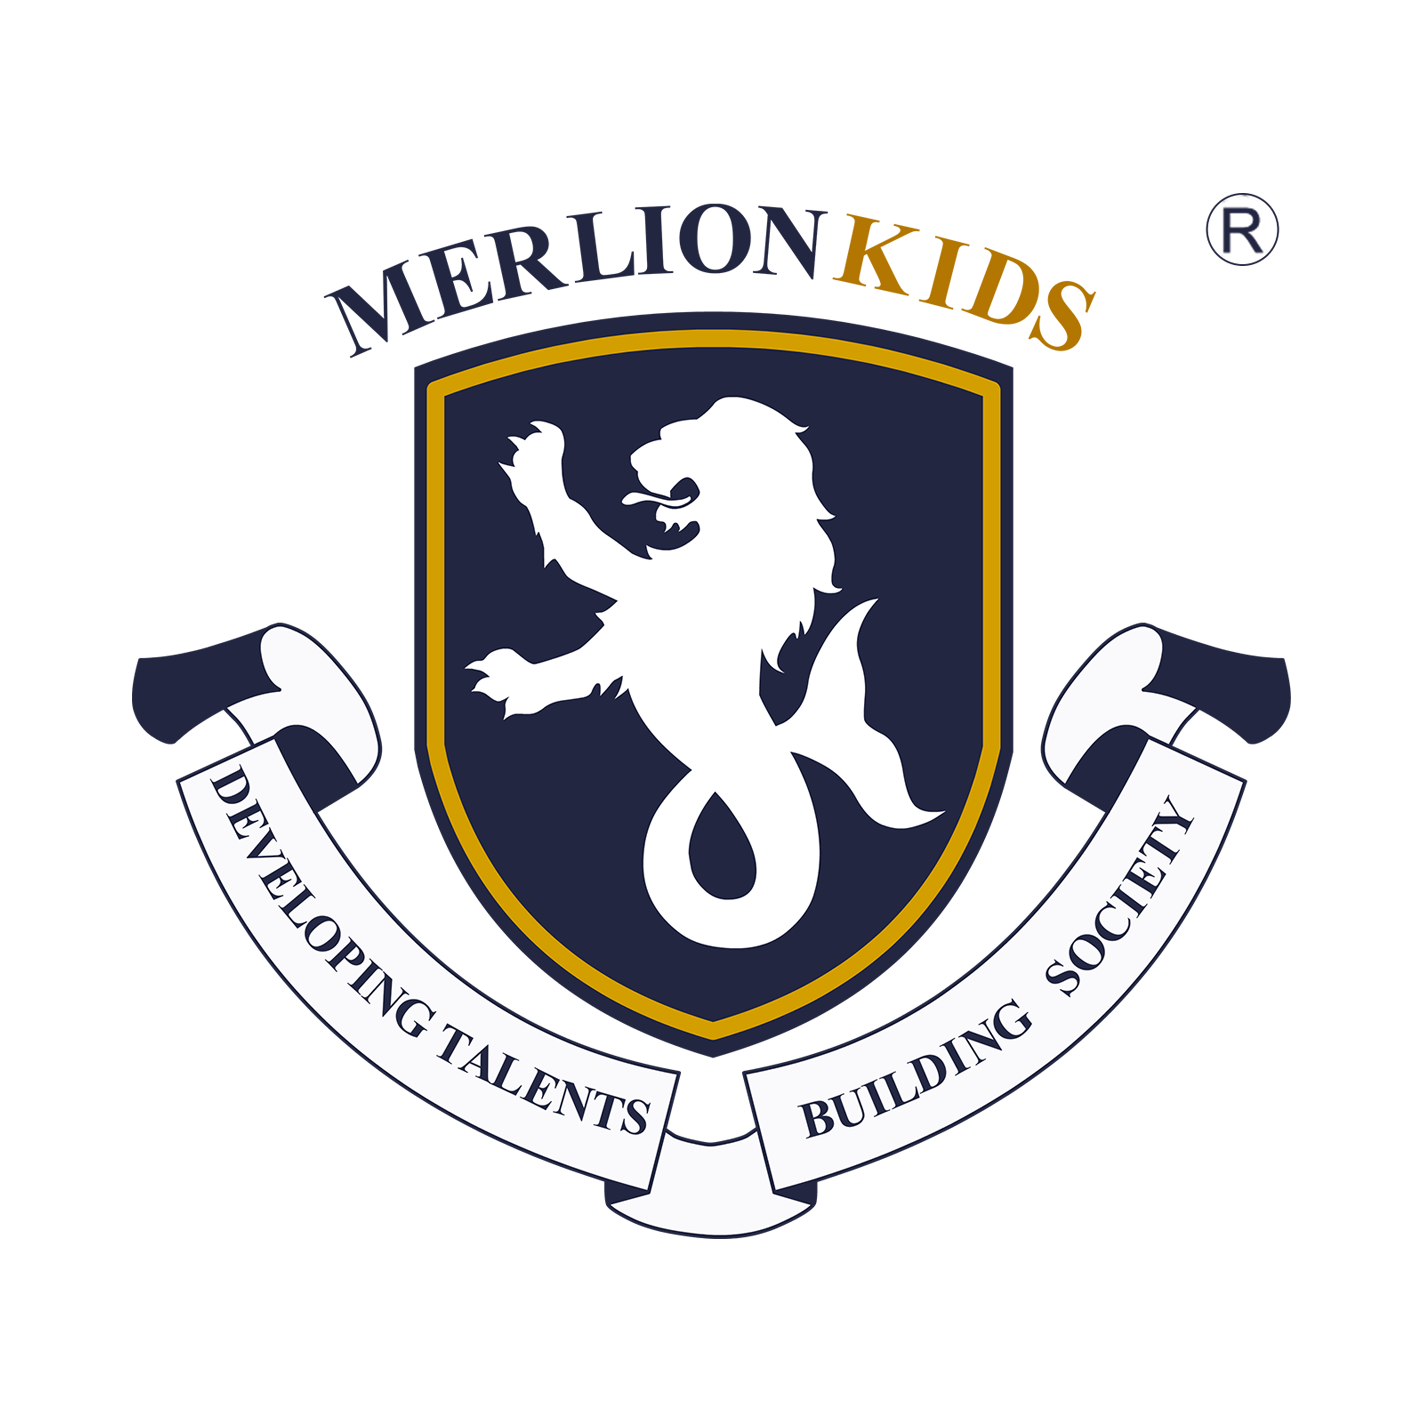 MerlionKids